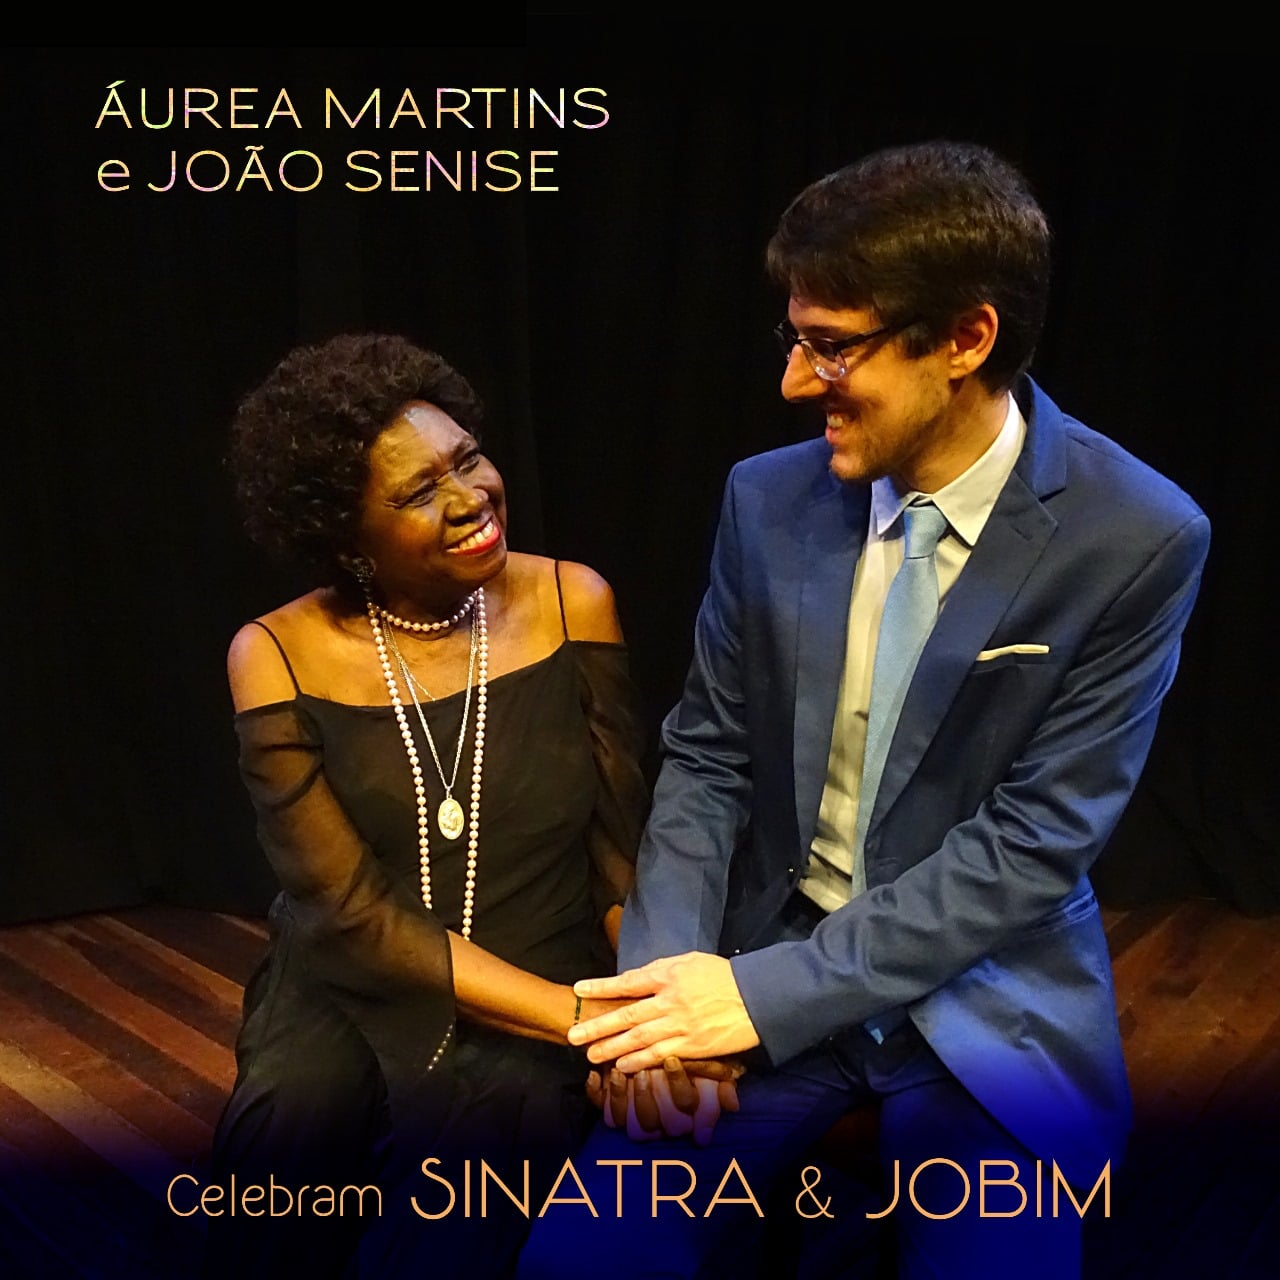 revistaprosaversoearte.com - Álbum Aurea Martins e João Senise celebram Sinatra & Jobim